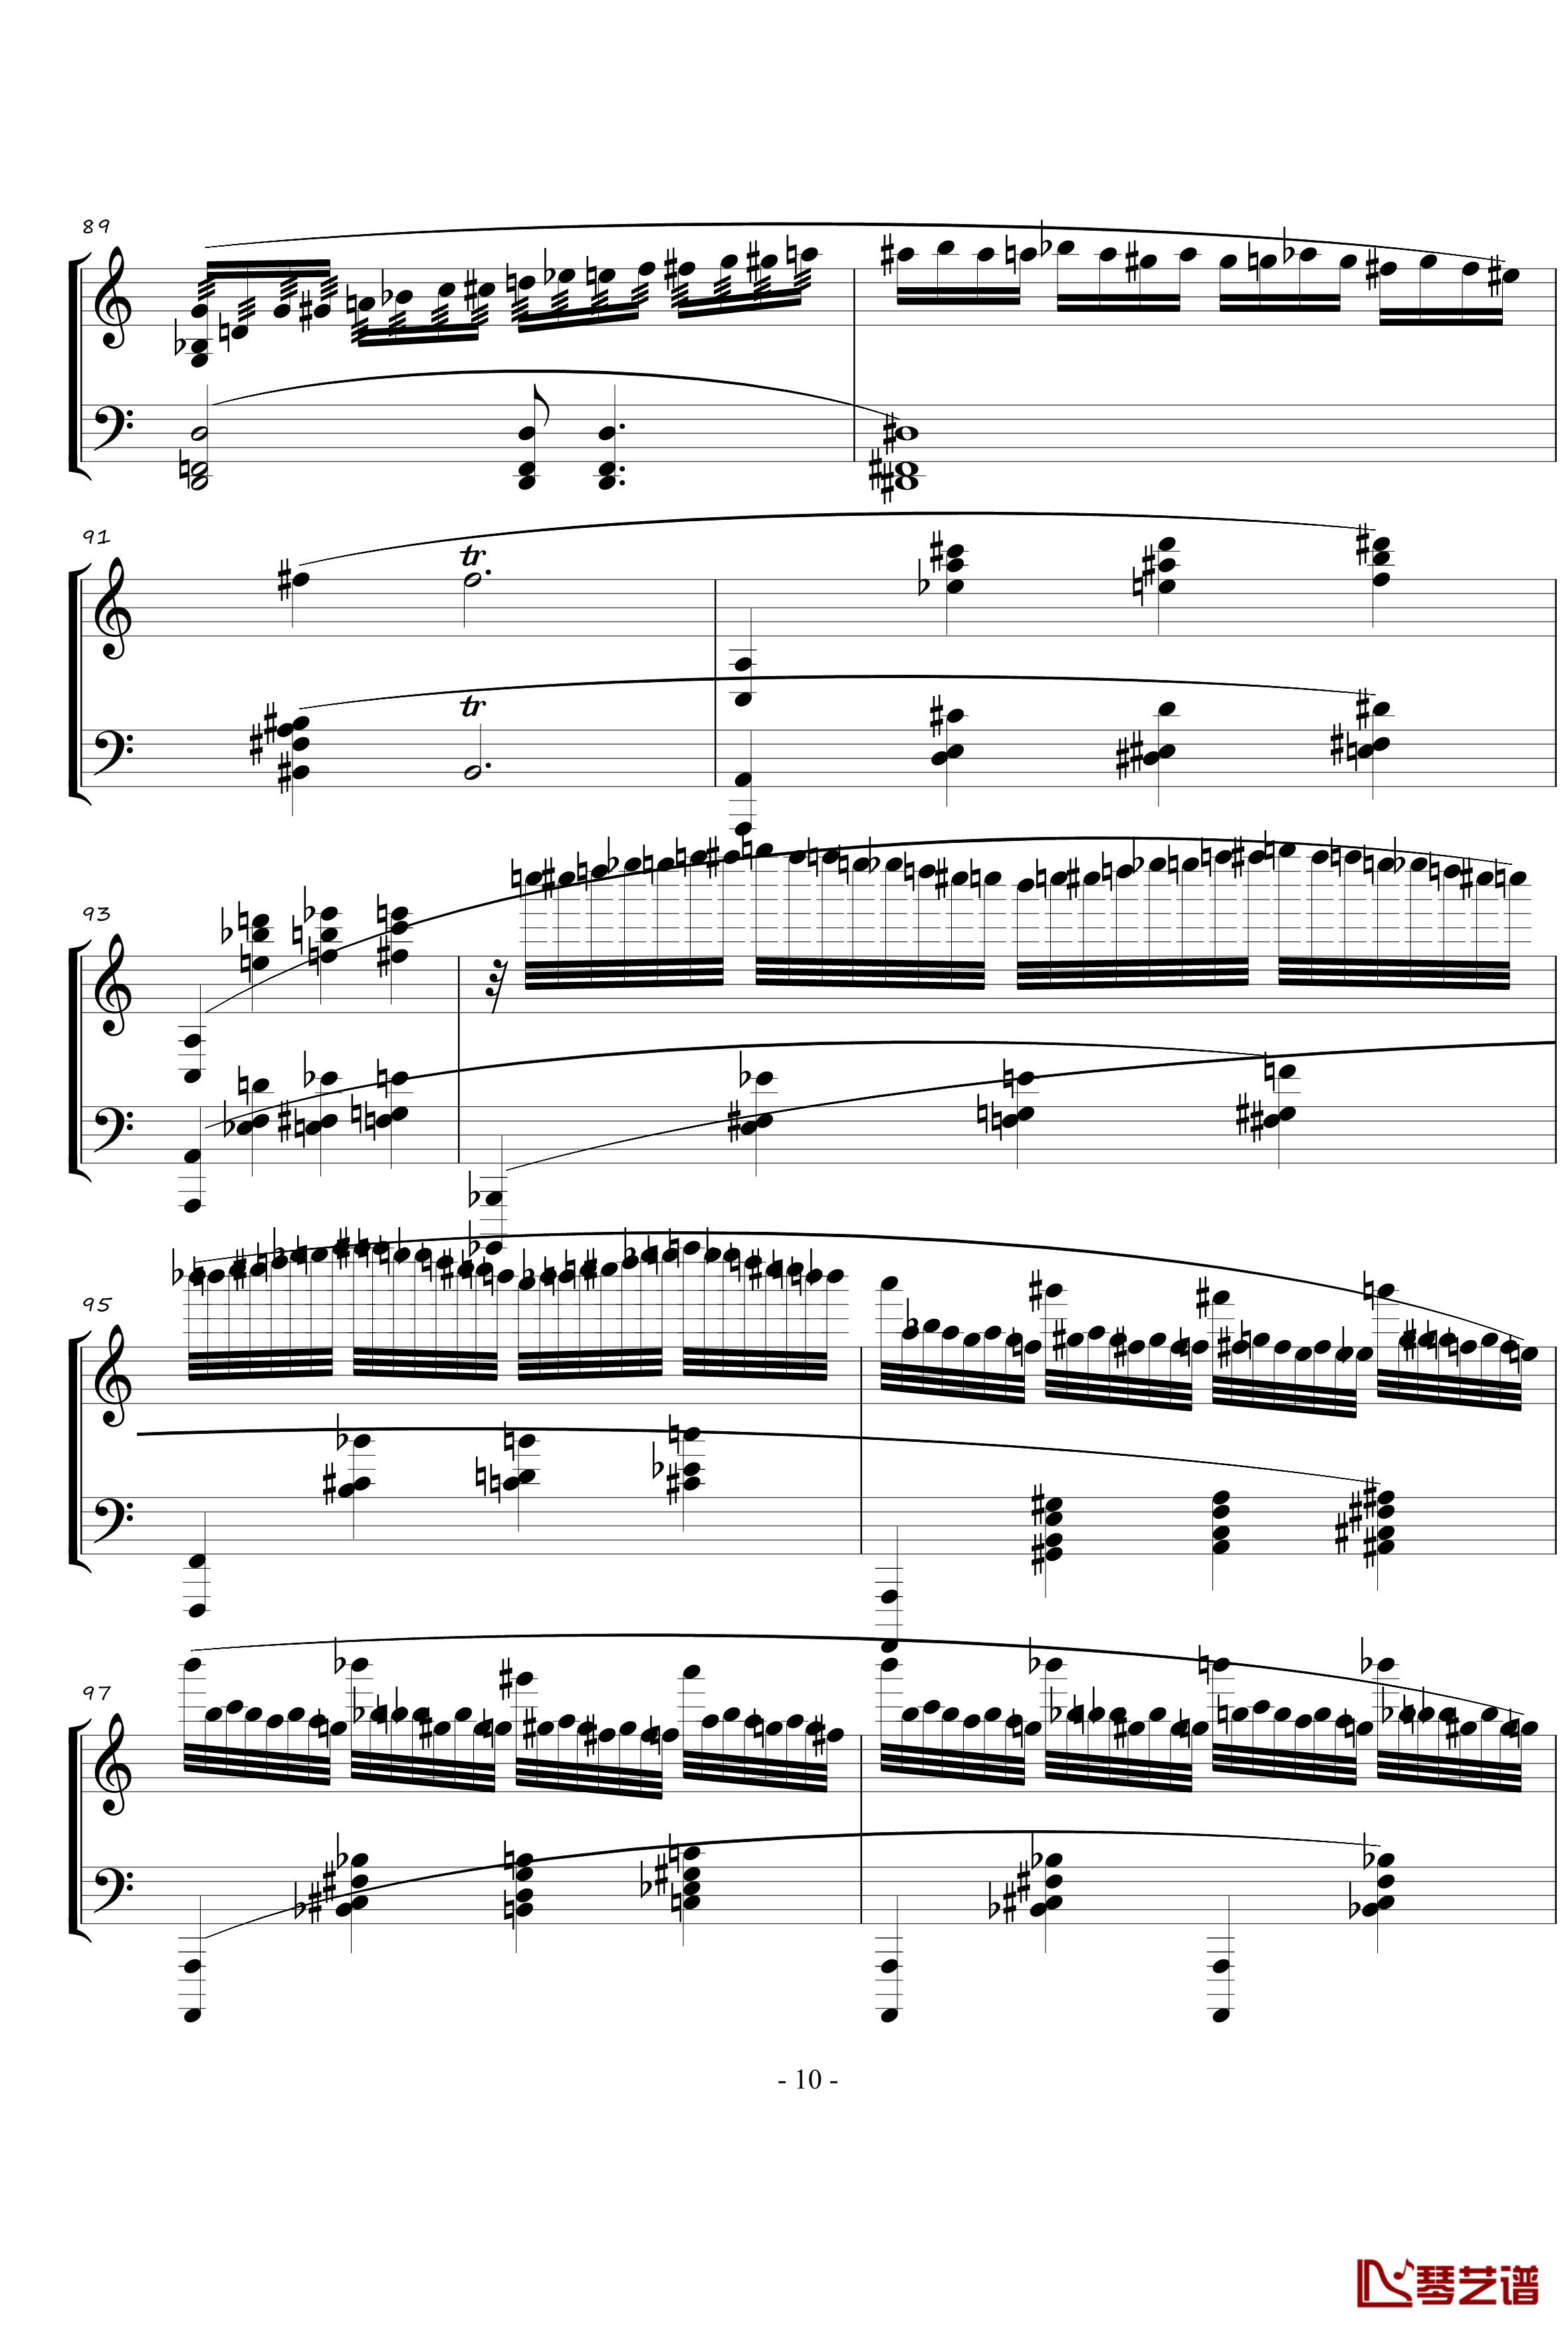 火星奏鸣曲钢琴谱-第一乐章-火星先生10